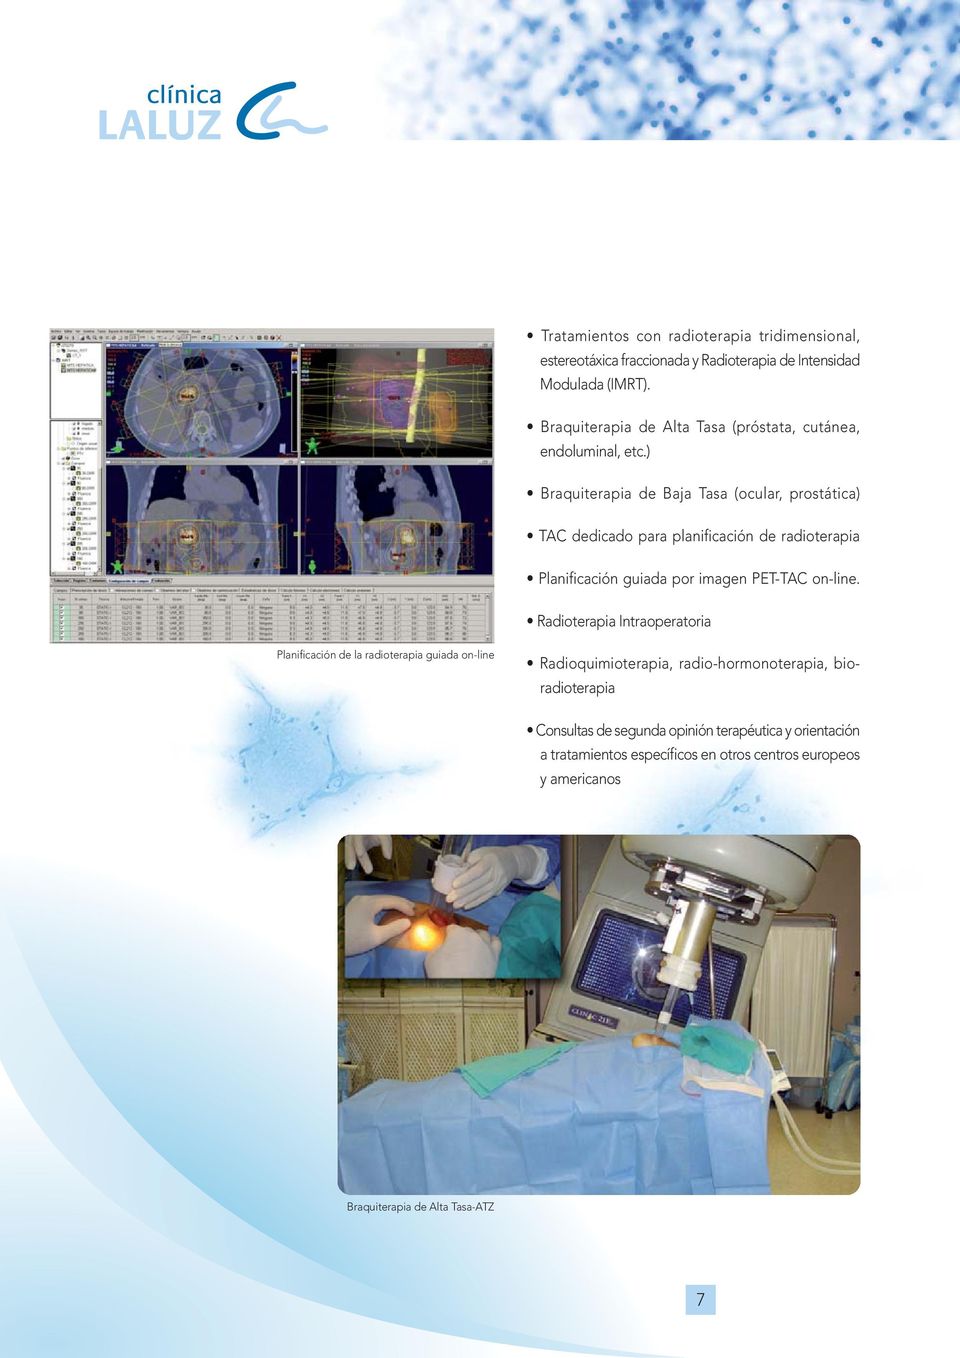 ) Braquiterapia de Baja Tasa (ocular, prostática) TAC dedicado para planificación de radioterapia Planificación guiada por imagen PET-TAC on-line.